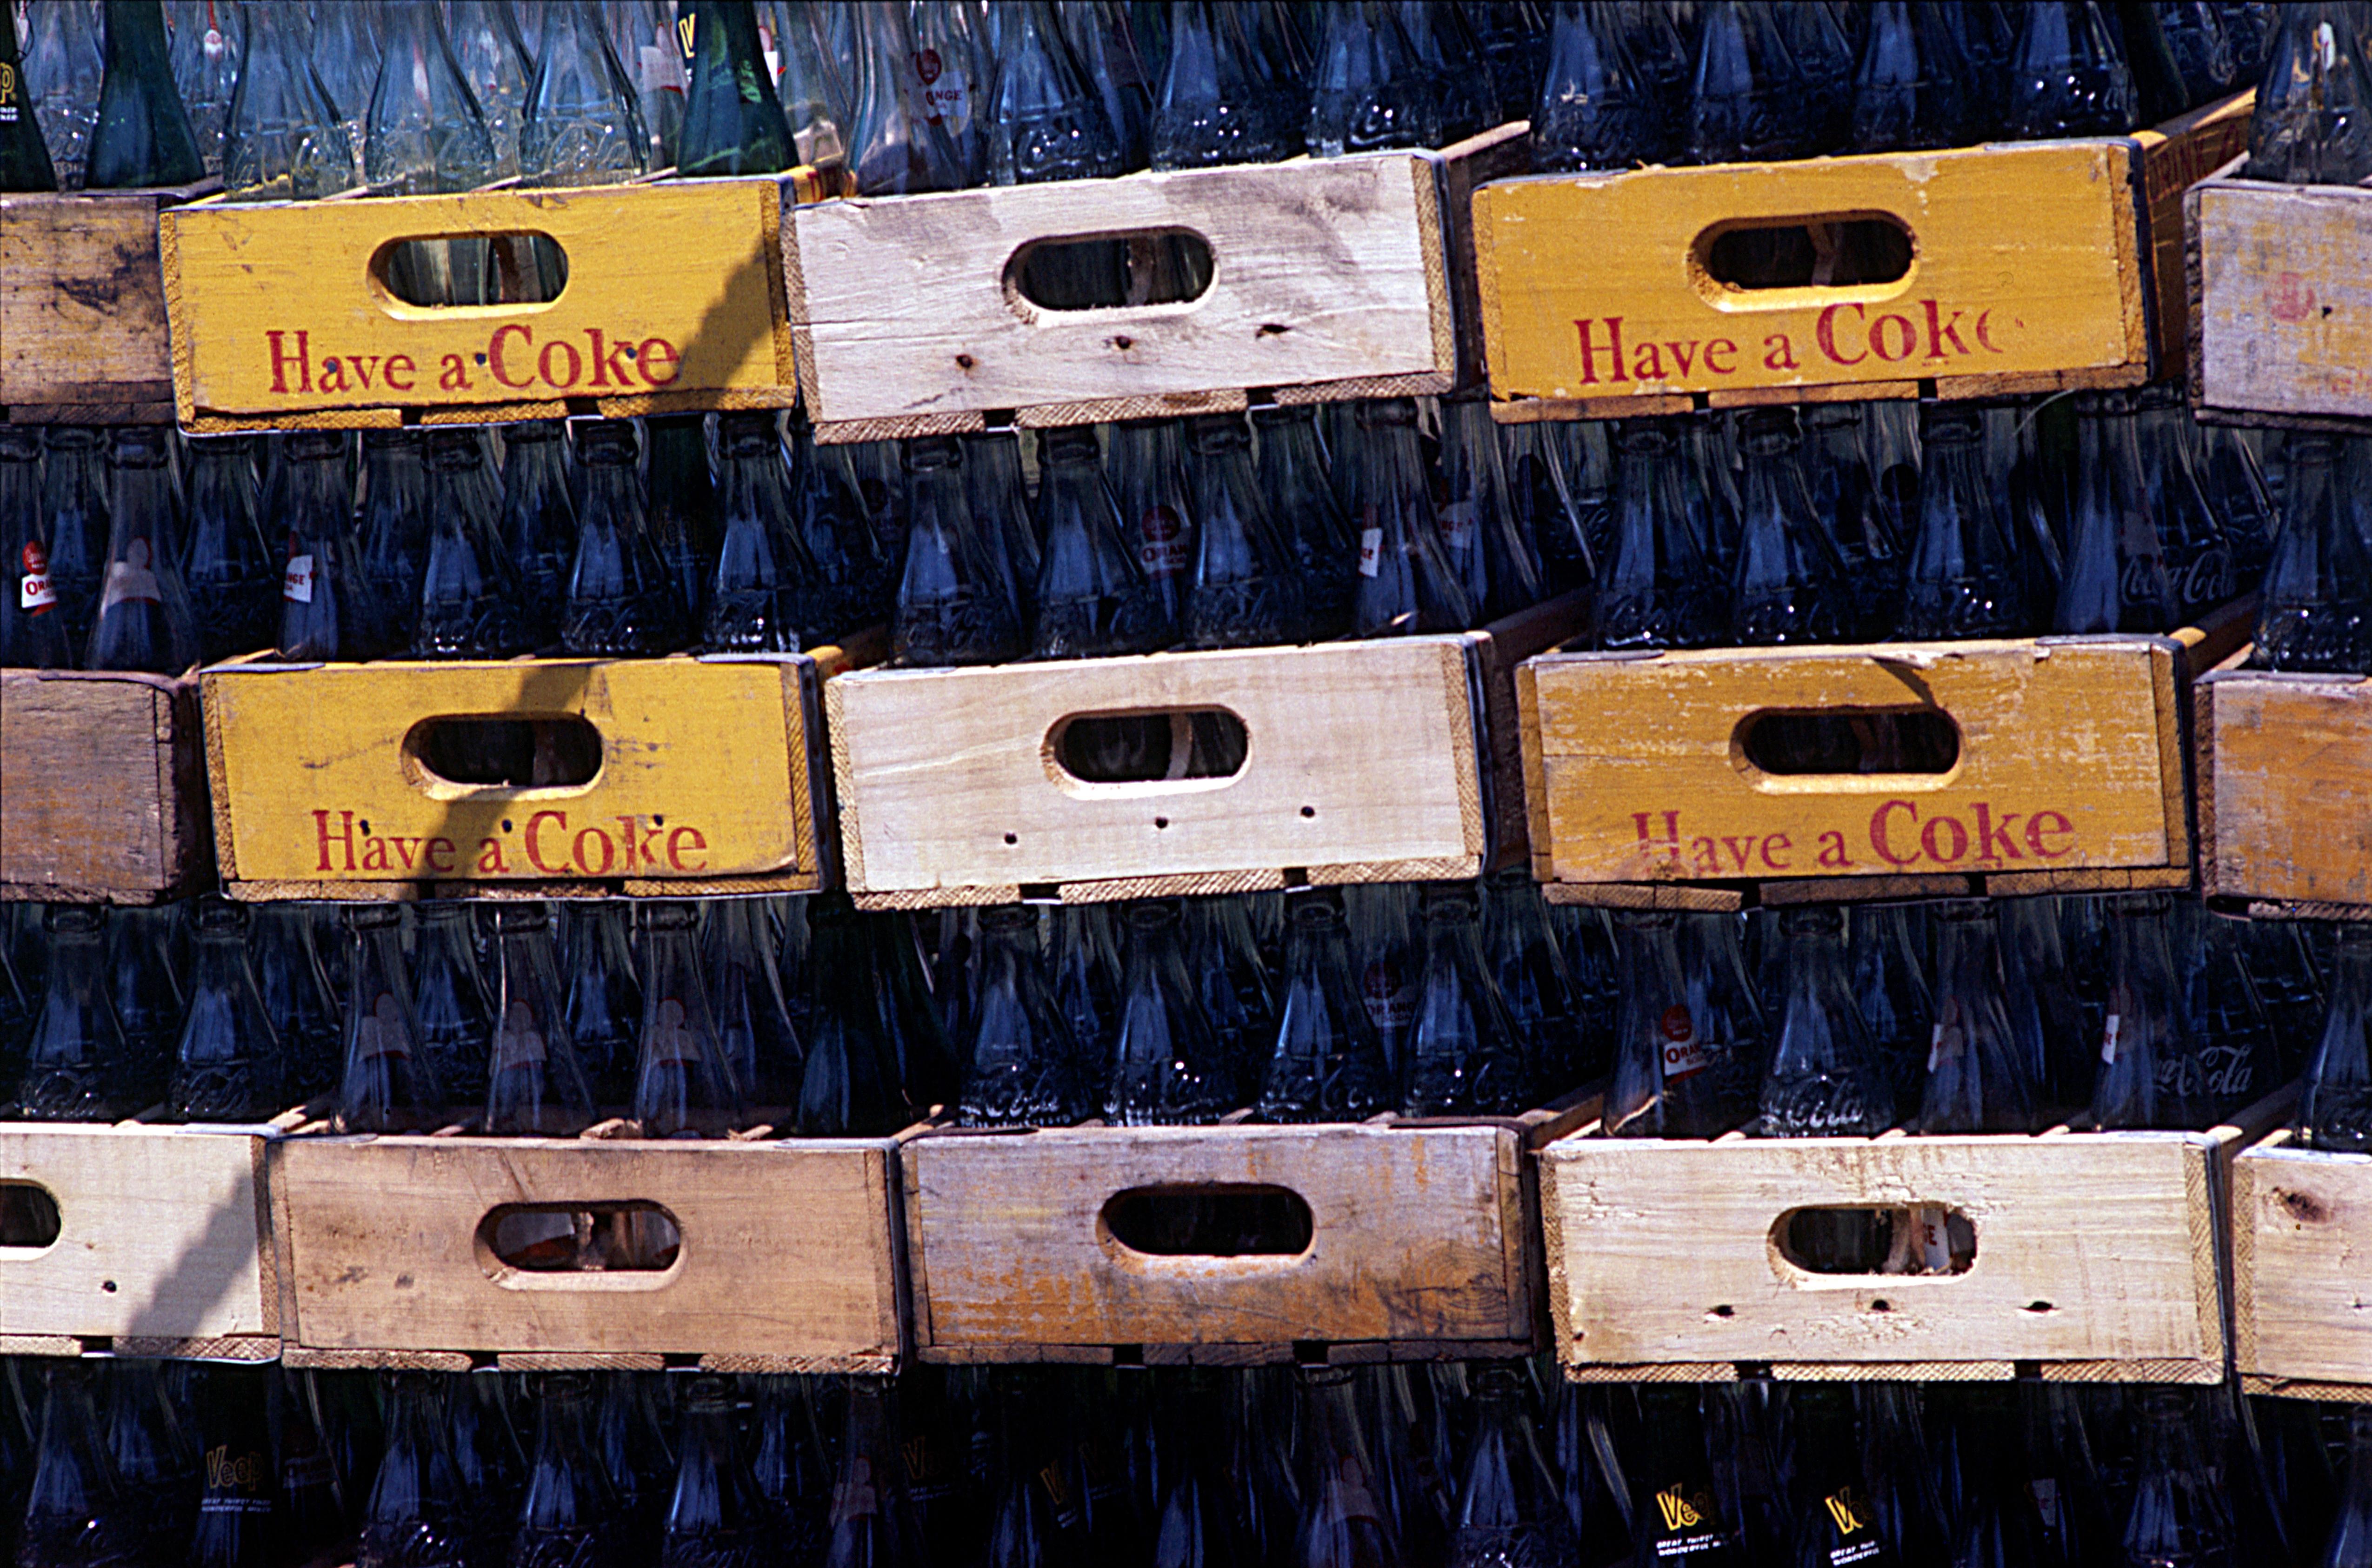 Color Photograph Jack Robinson - Have a Coke (avoir un bonbon)